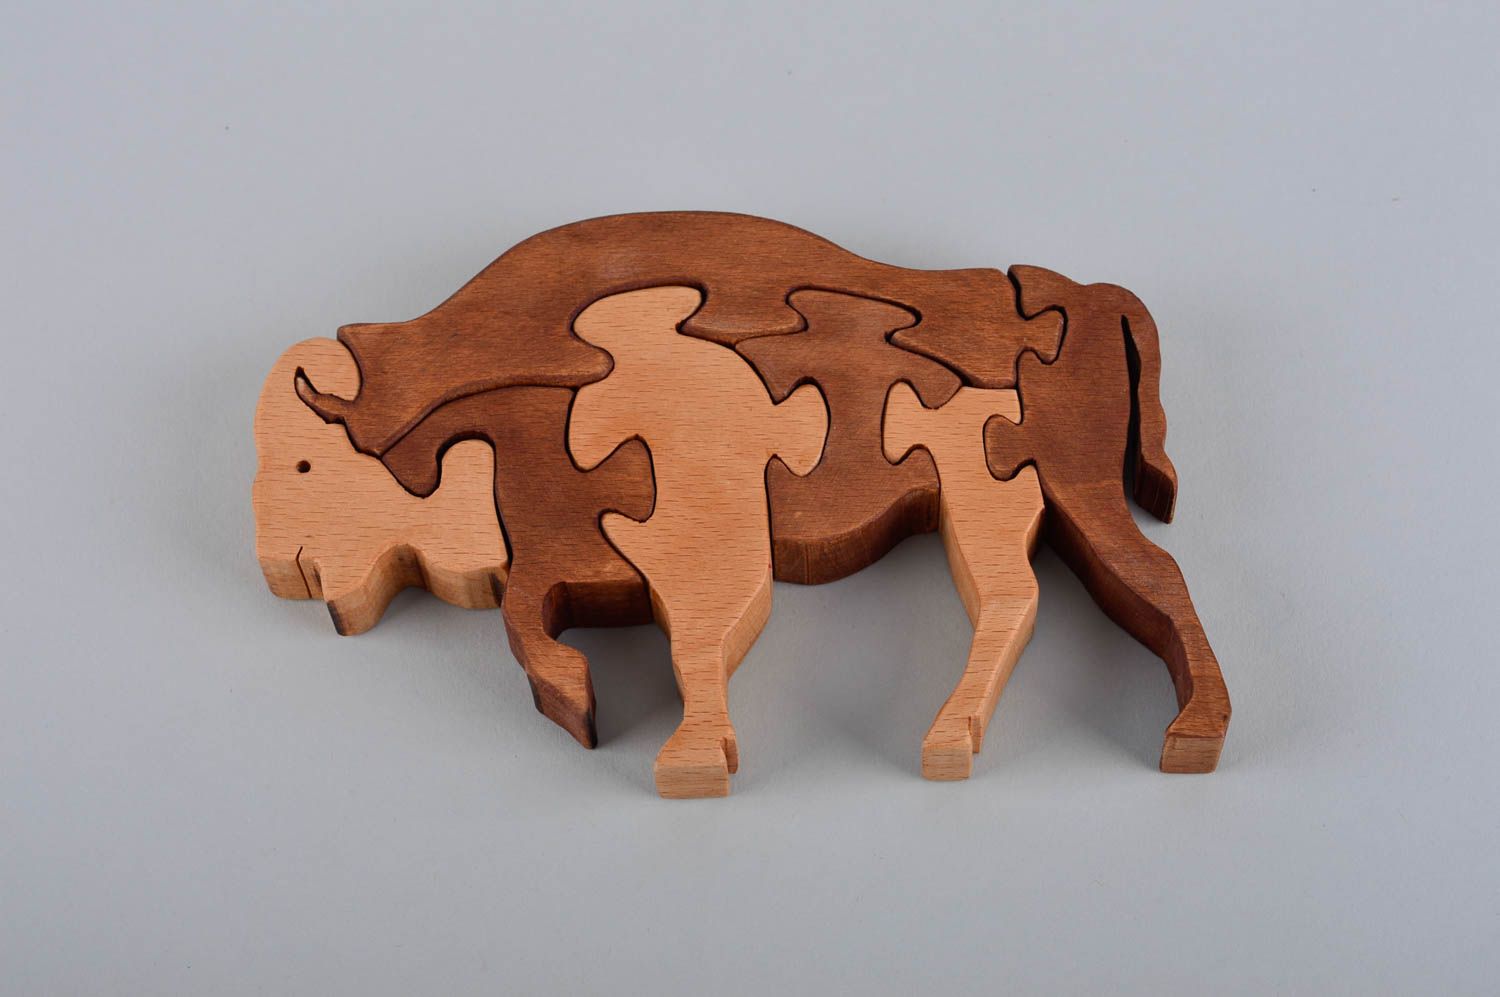  Развивающая игрушка ручной работы детская головоломка пазлы для детей бизон фото 4